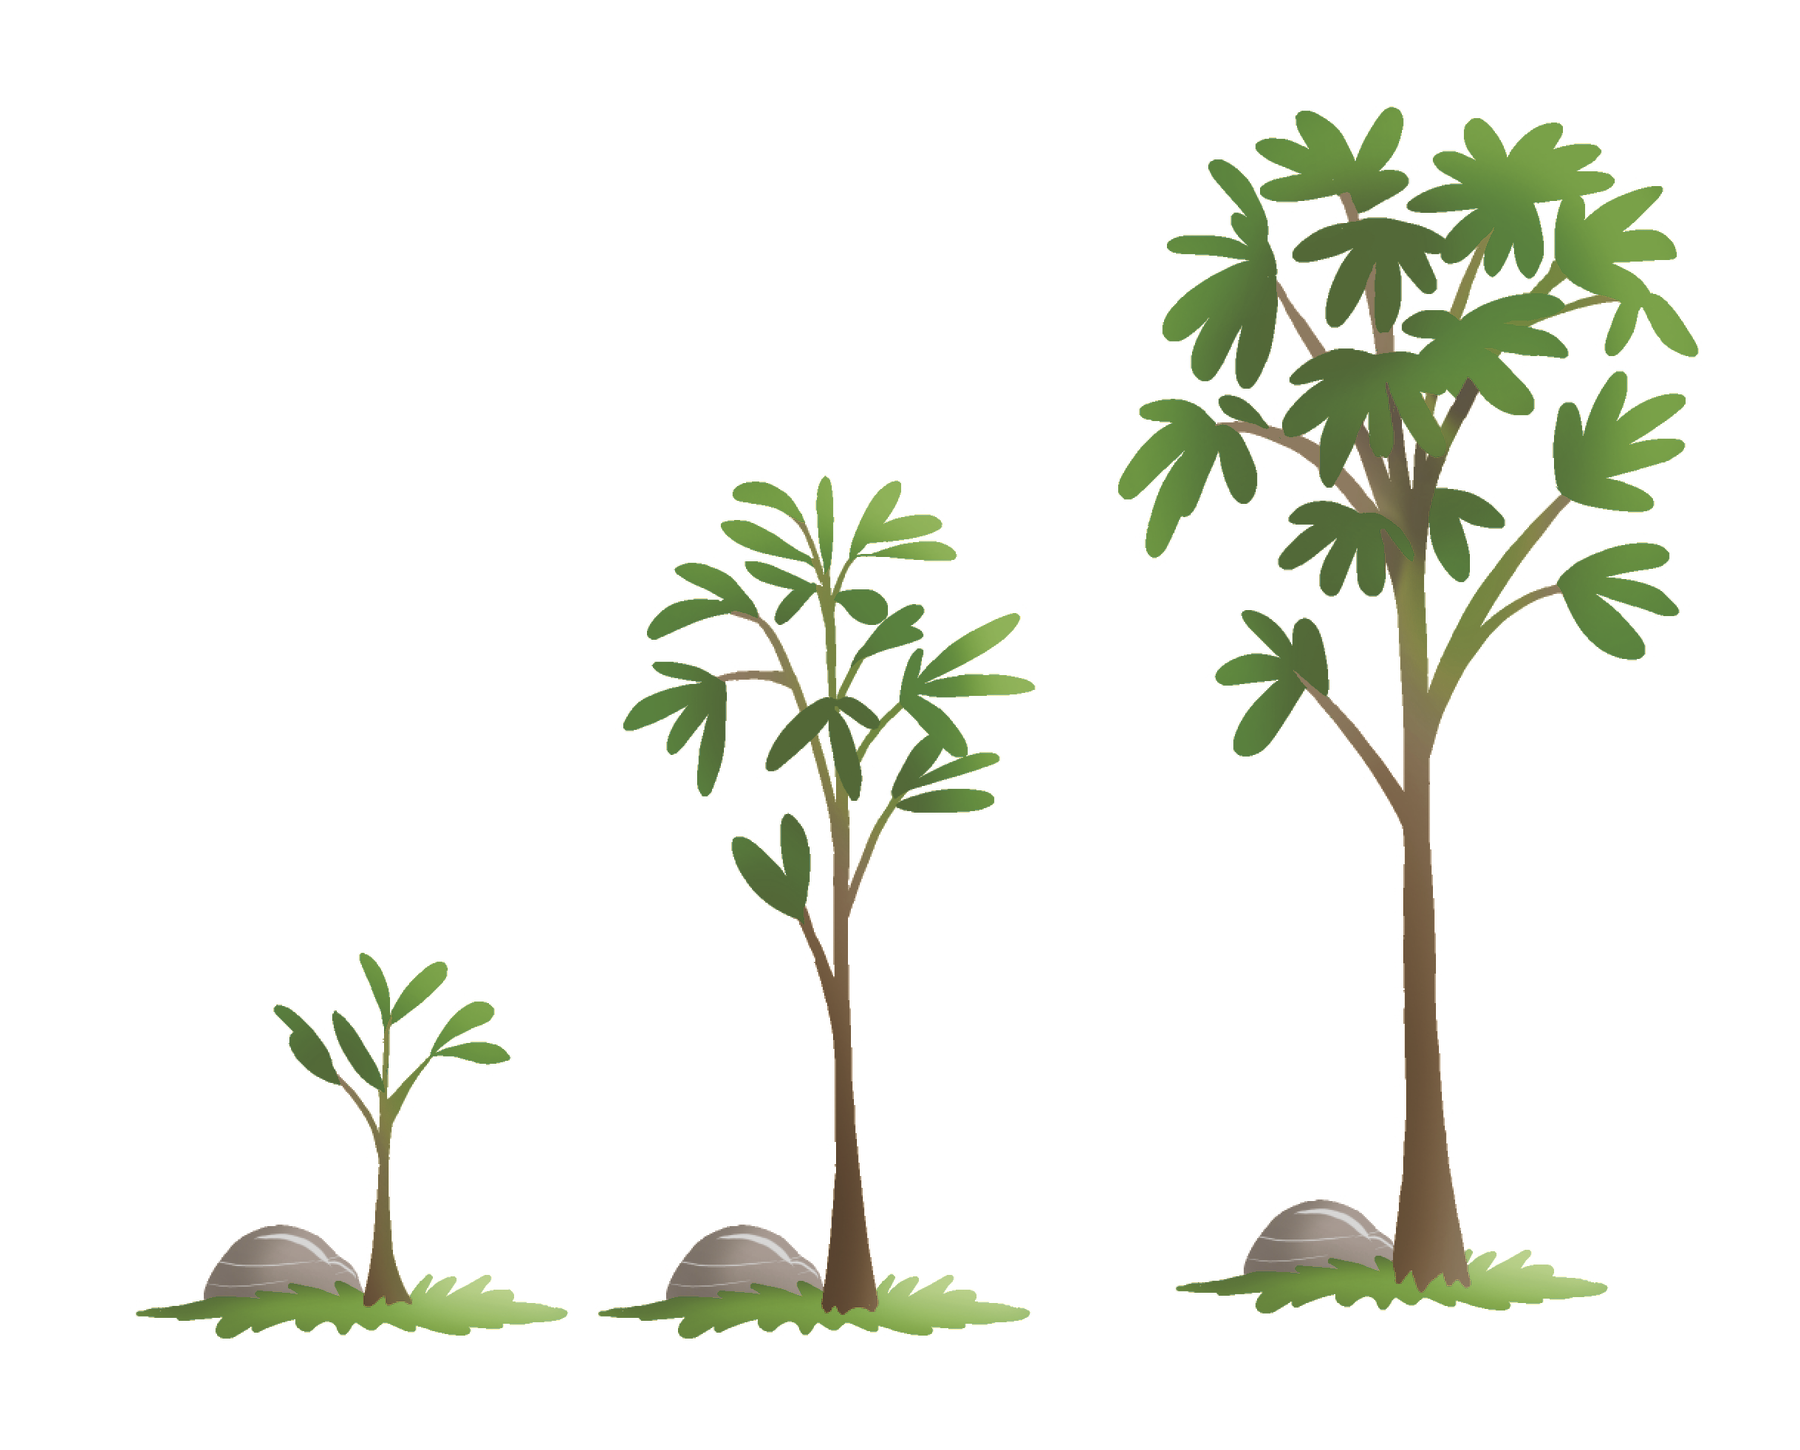 Ilustração. Três plantas: uma pequena, outra média e outra grande, uma ao lado da outra, da esquerda para a direita.